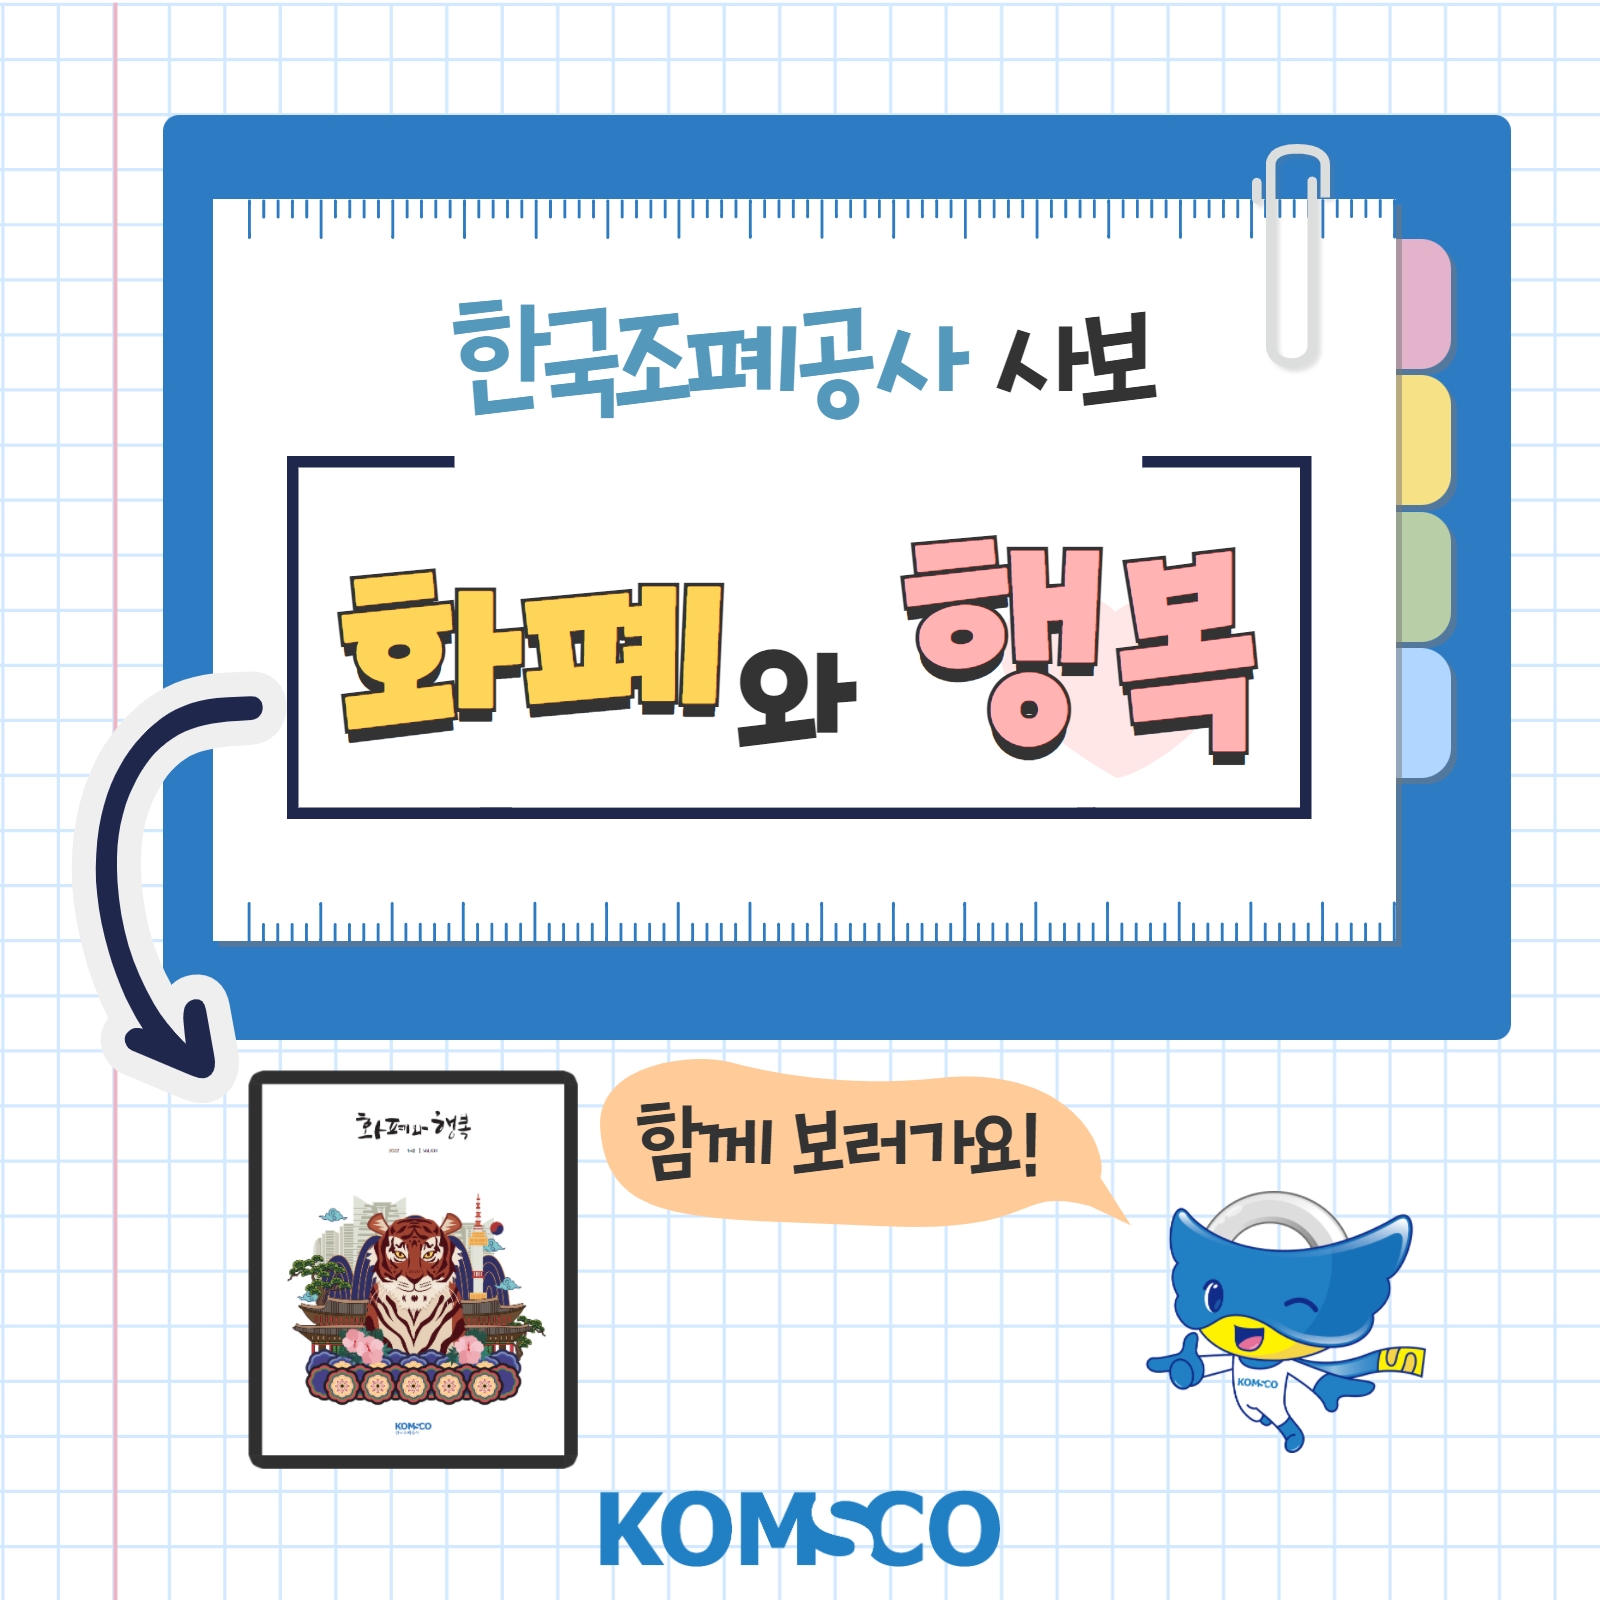 한국조폐공사 사보 '화폐와 행복' 함께 보러가요!